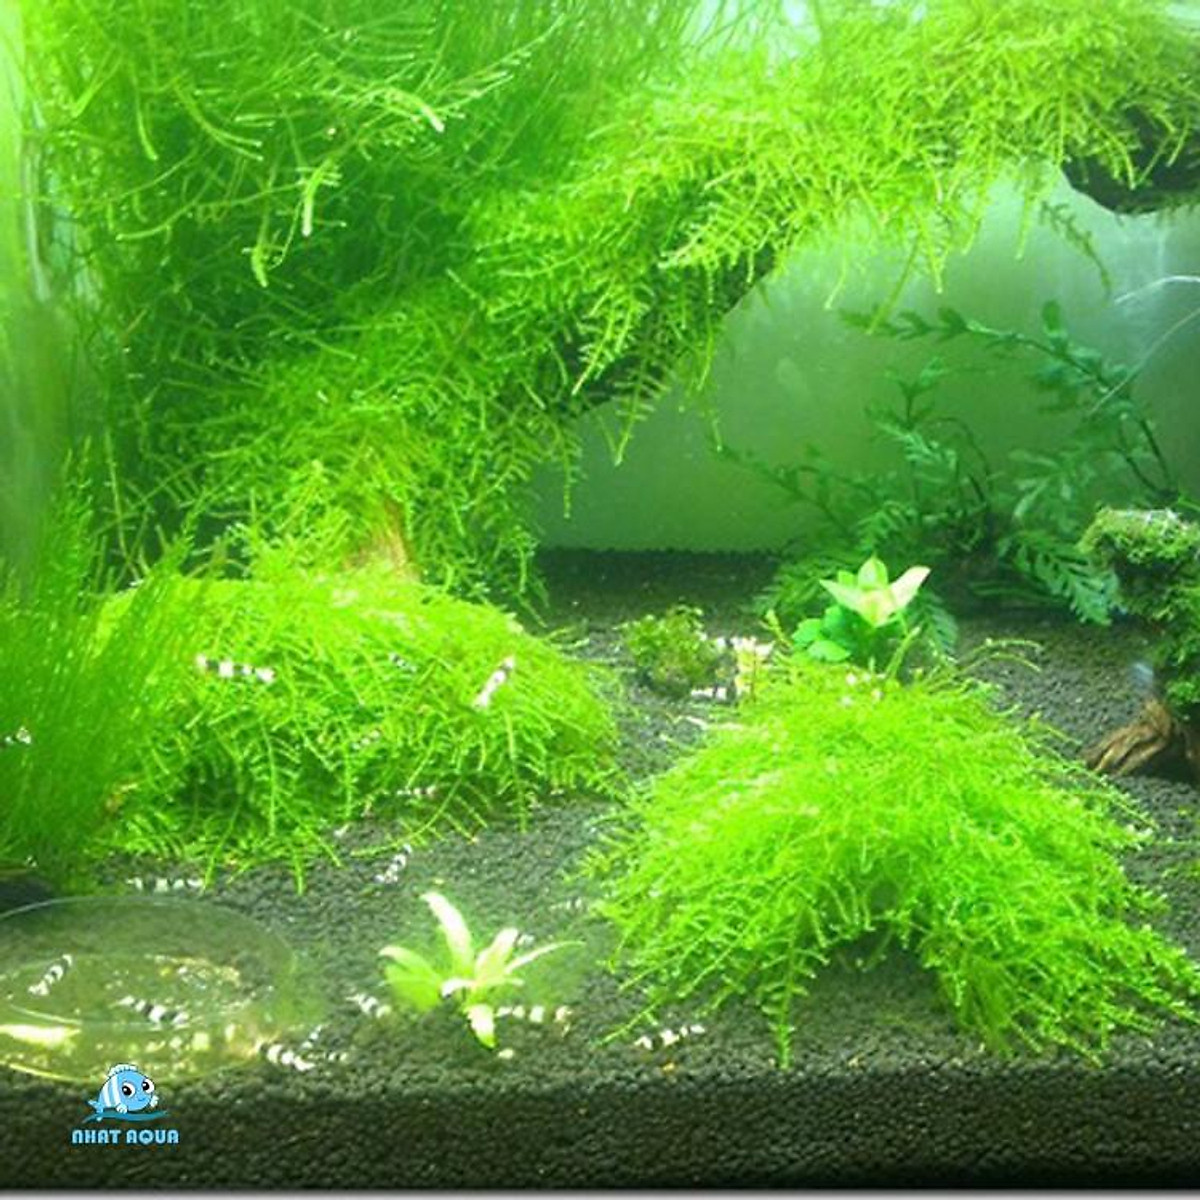 Rêu thủy sinh MINI TAIWAN - Taiwan moss - Bể cá & Phụ kiện